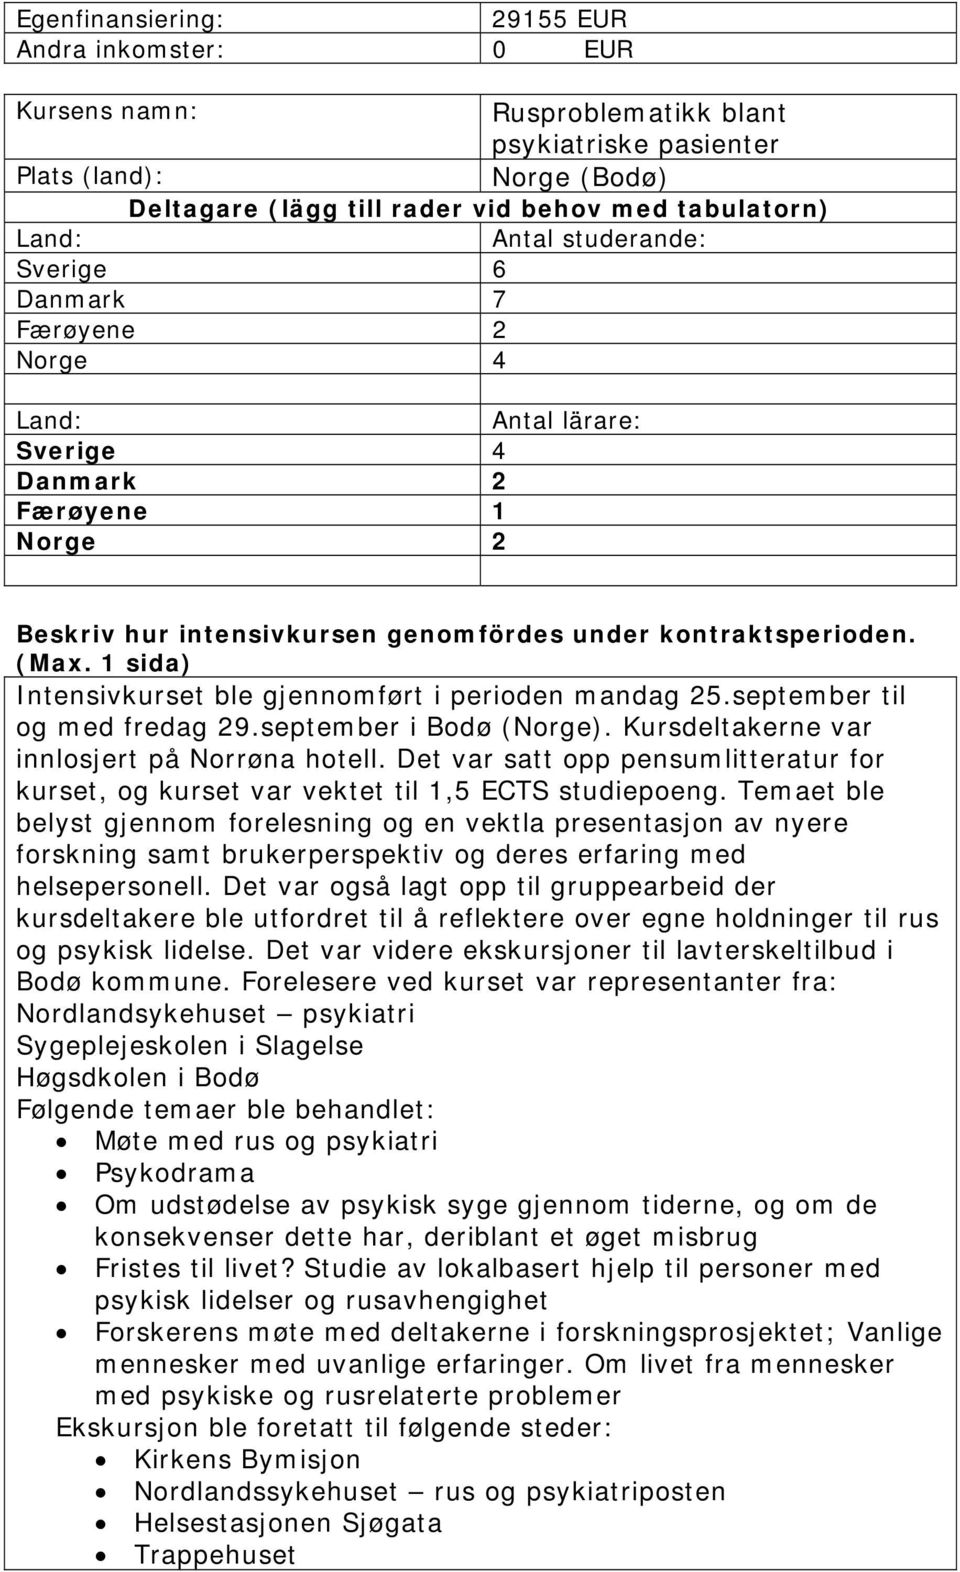 Intensivkurset ble gjennomført i perioden mandag 25.september til og med fredag 29.september i Bodø (Norge). Kursdeltakerne var innlosjert på Norrøna hotell.